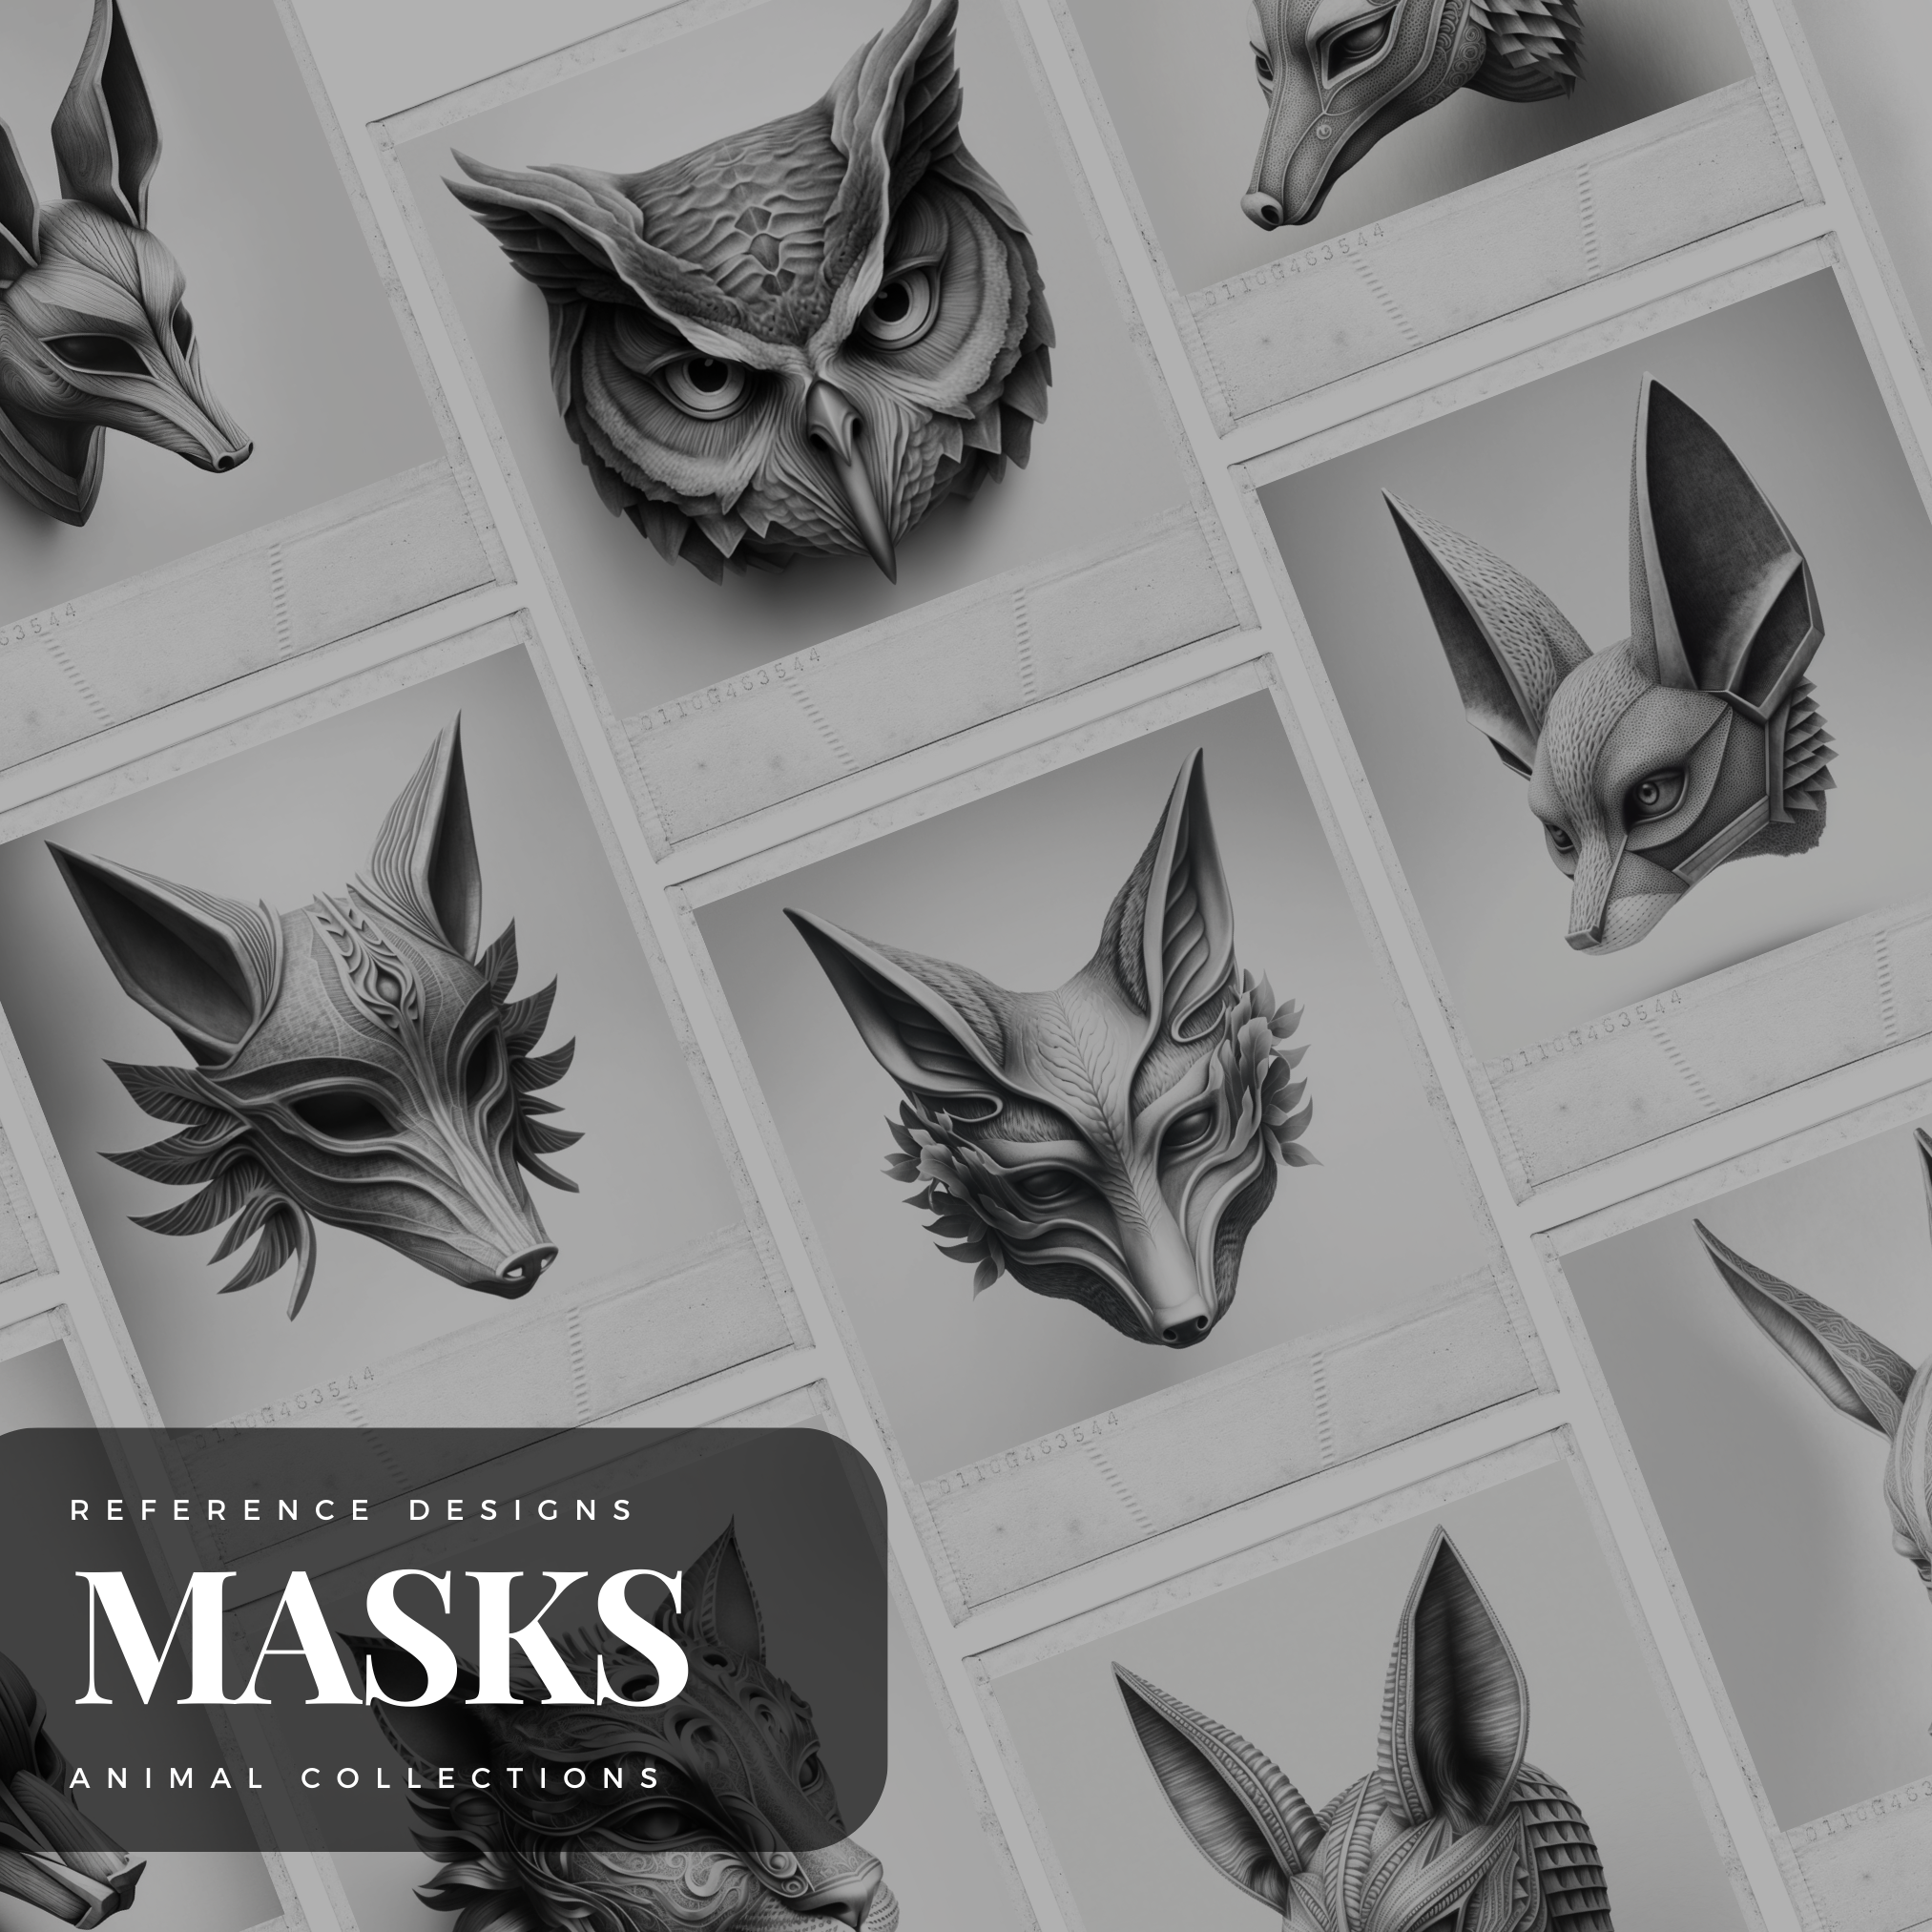 Animal Masks Digital Reference Design Collection: 50 Procreate & Sketchbook Images